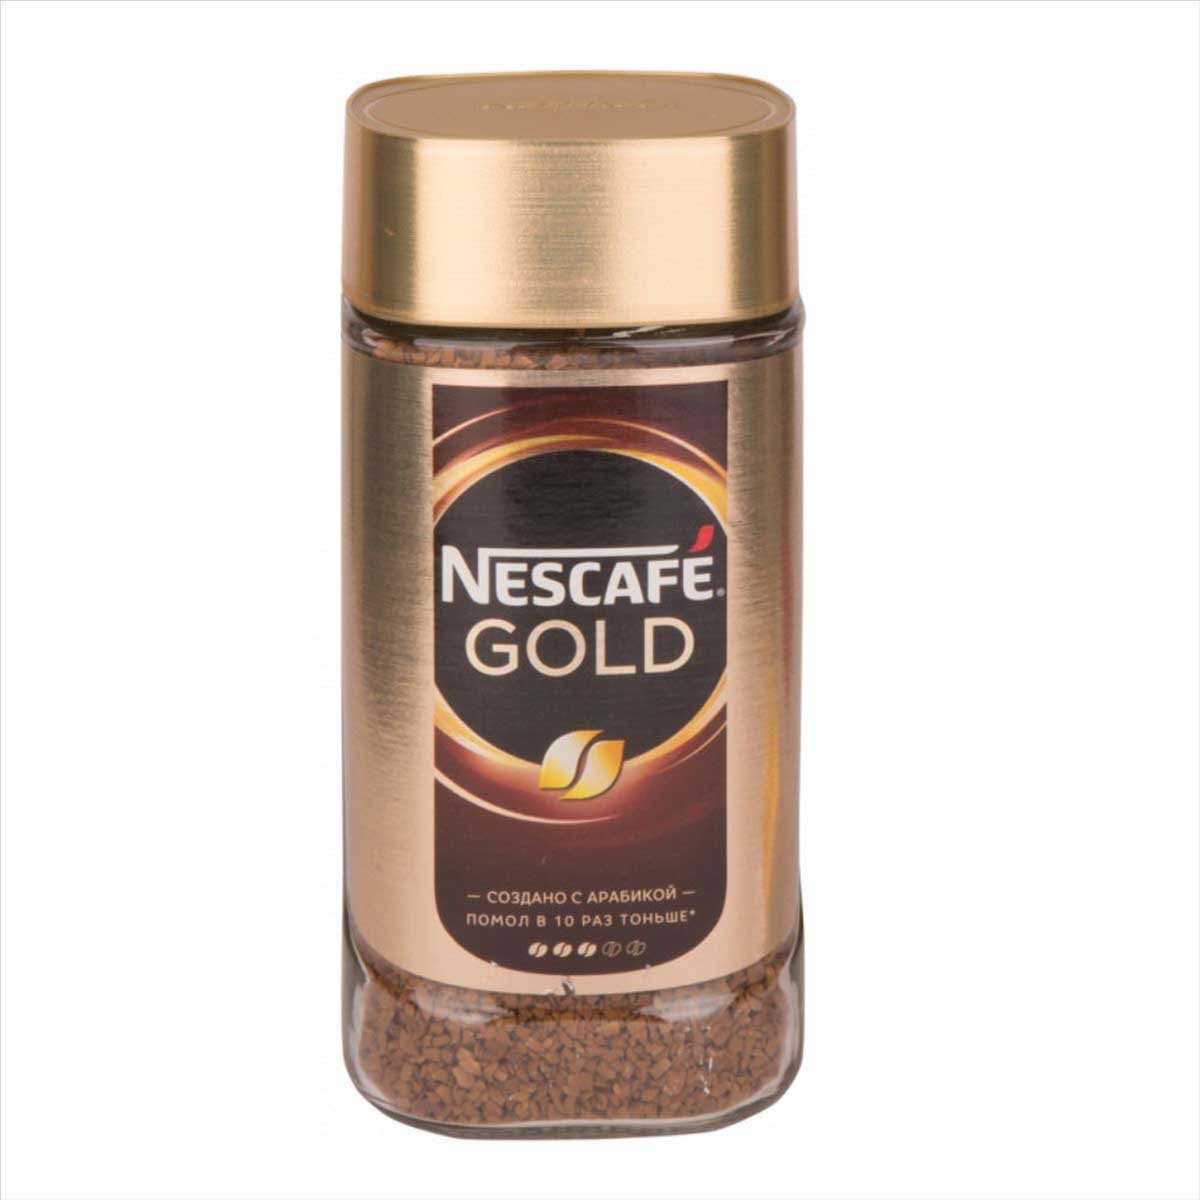 Банка кофе цена. Кофе Нескафе Голд 190 ст/б. Кофе Nescafe Gold ст/б 190 гр. Кофе Нескафе Голд 95 ст/б. Кофе "Nescafe" Голд 190г.